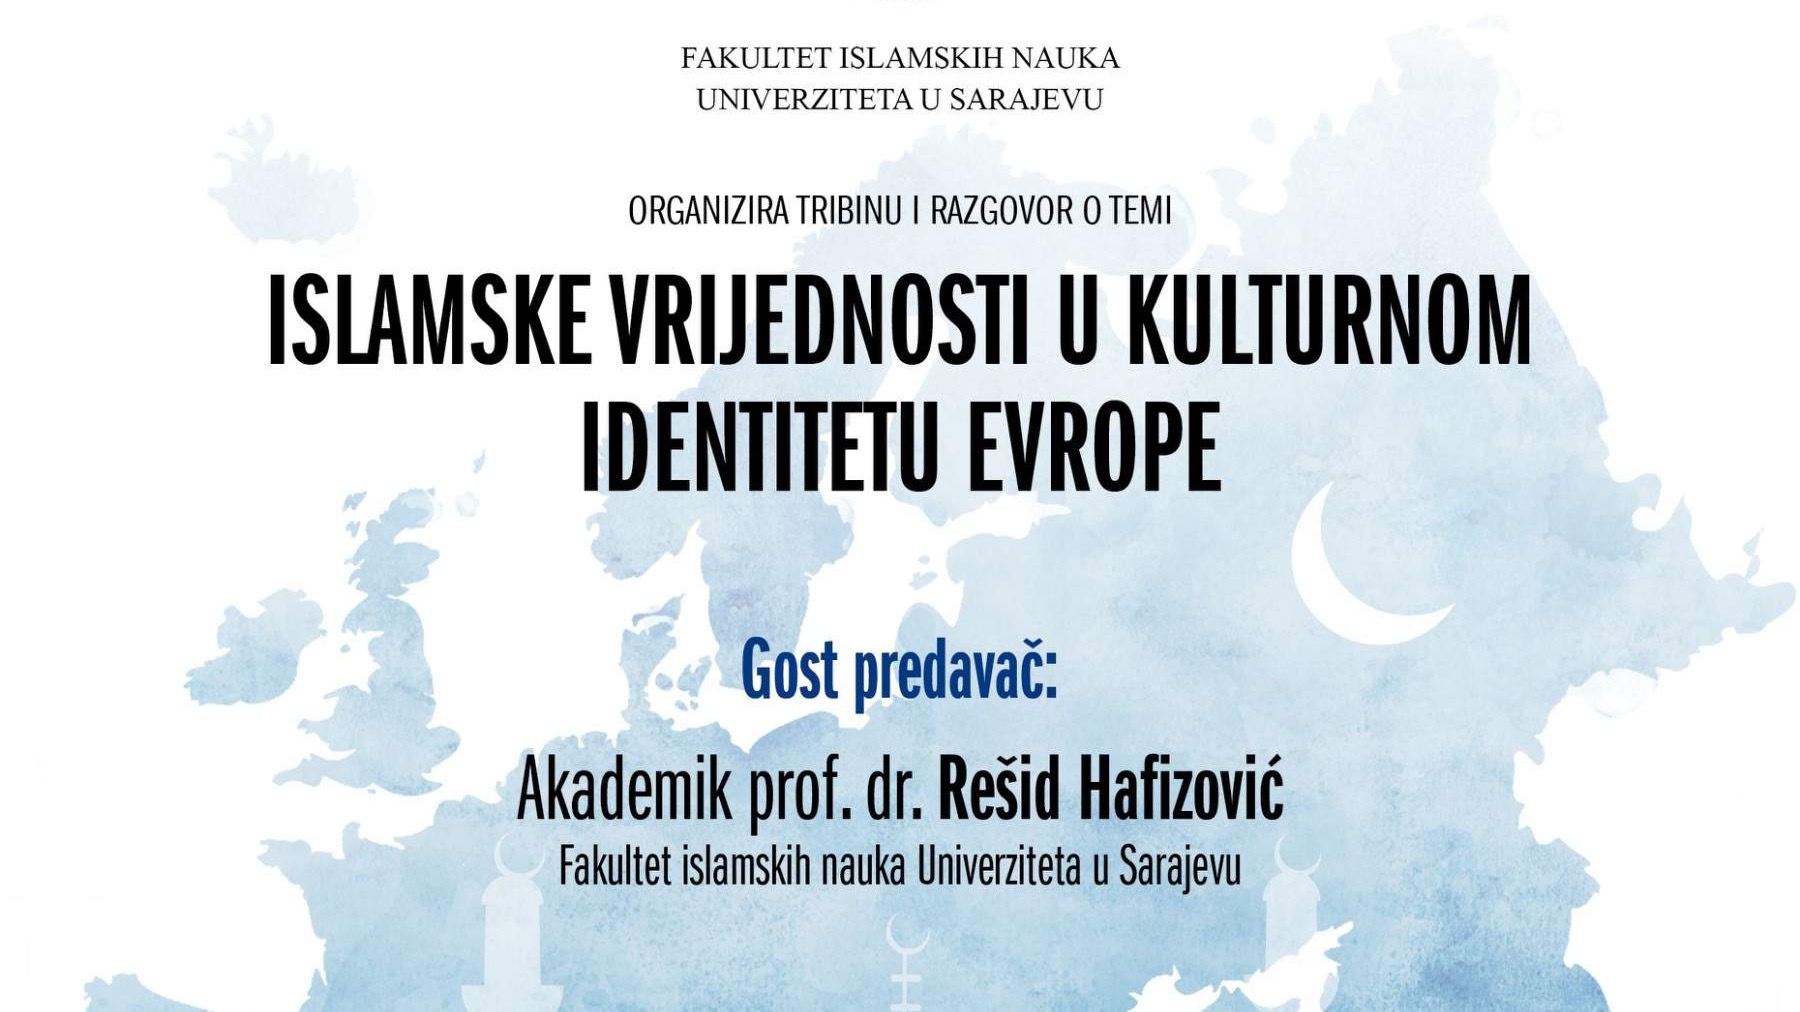 FIN: Tribina "Islamske vrijednosti u kulturnom identitetu Evrope" 29. decembra, predavač akademik prof. dr. Rešid Hafizović